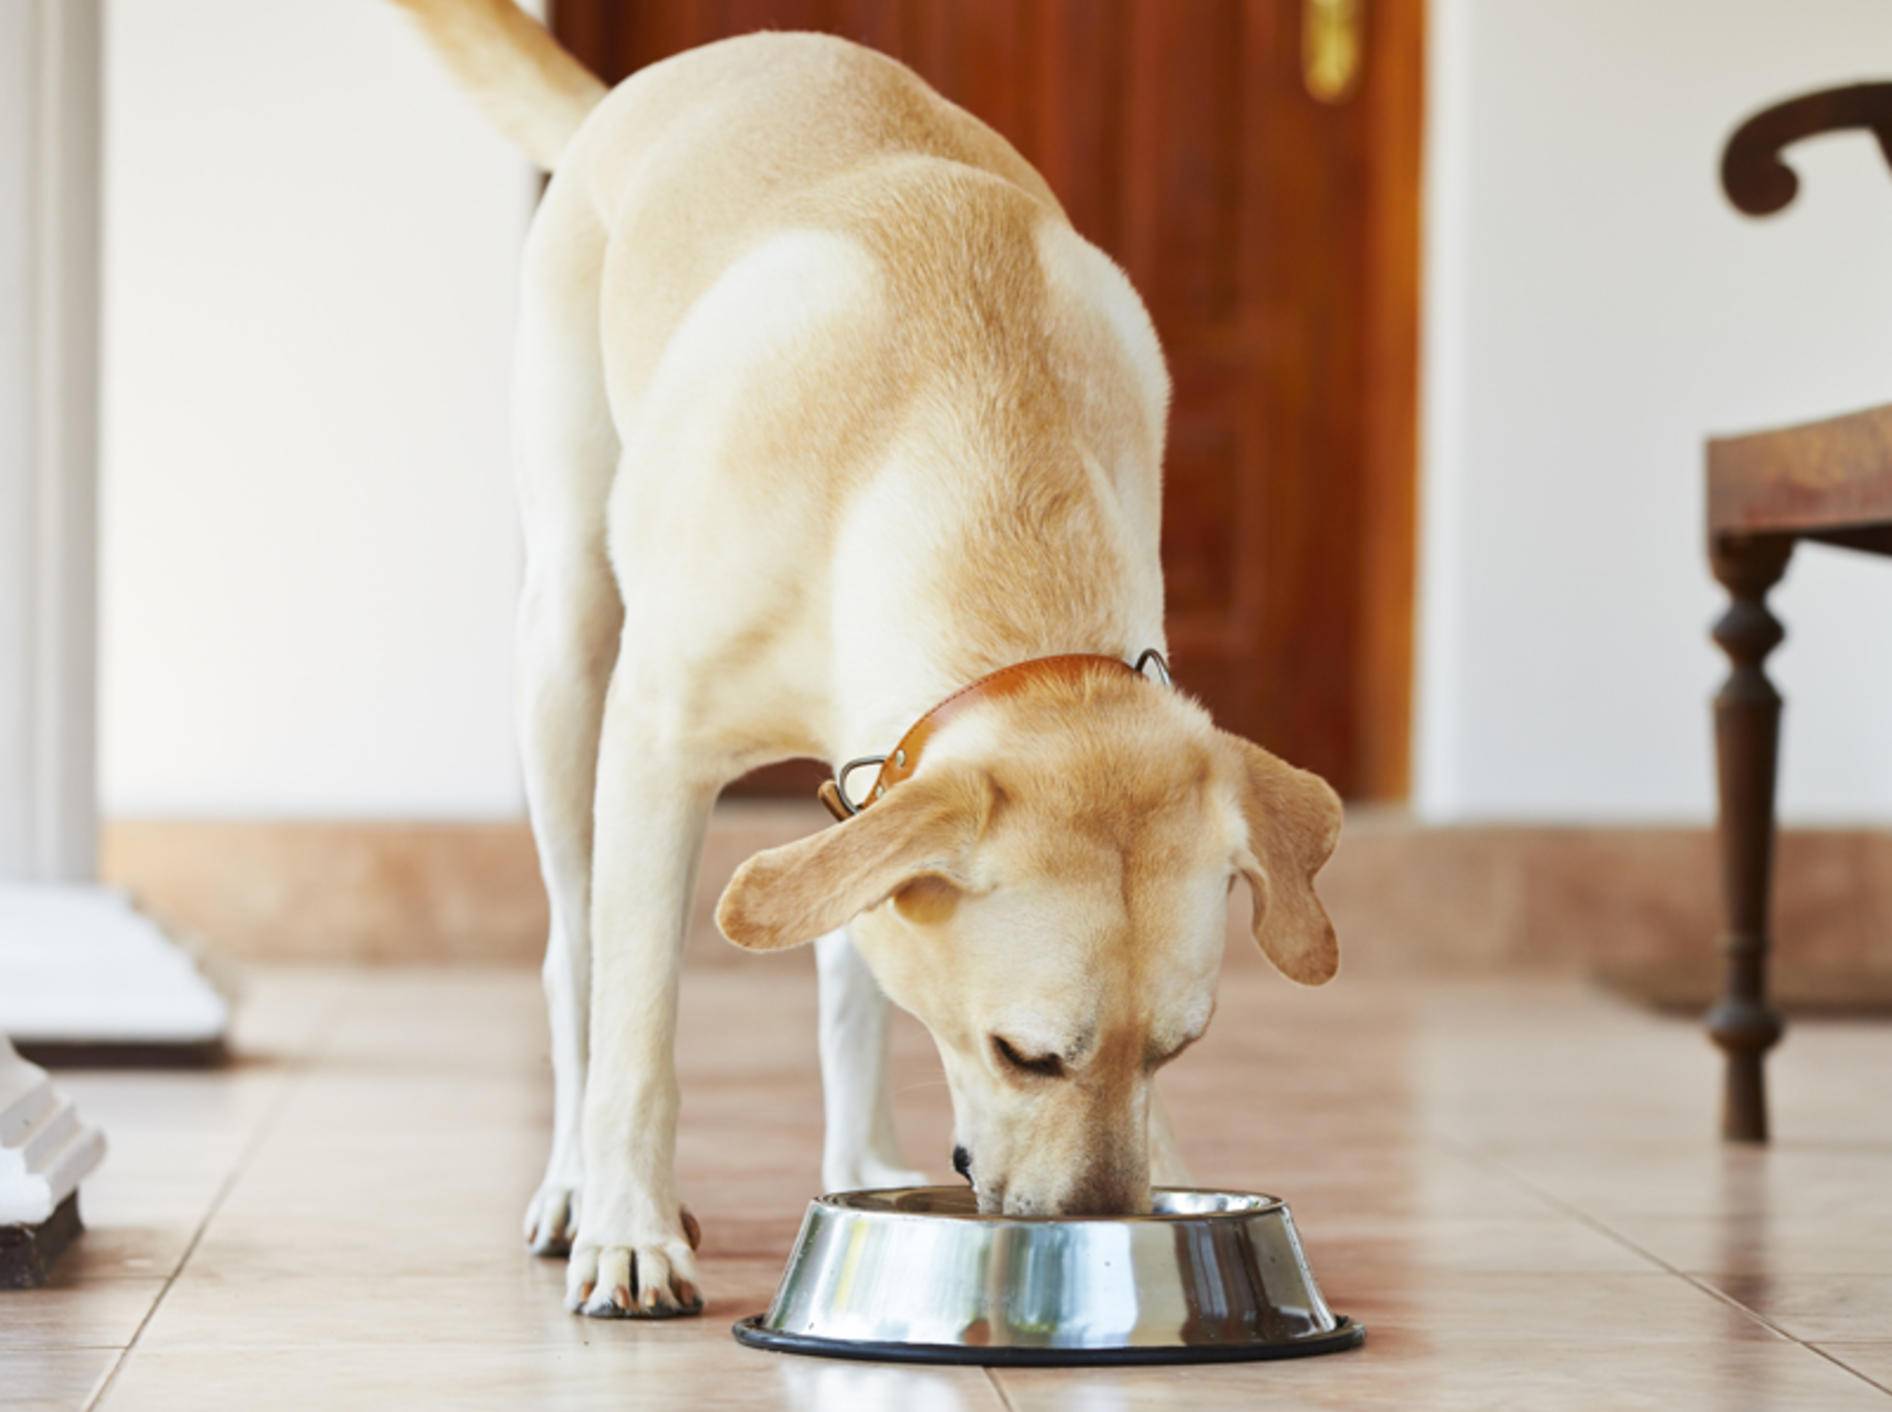 Labradore wissen eine zünftige Mahlzeit zu schätzen, sind aber manchmal etwas verfressen – Shutterstock / Jaromir Chalabala